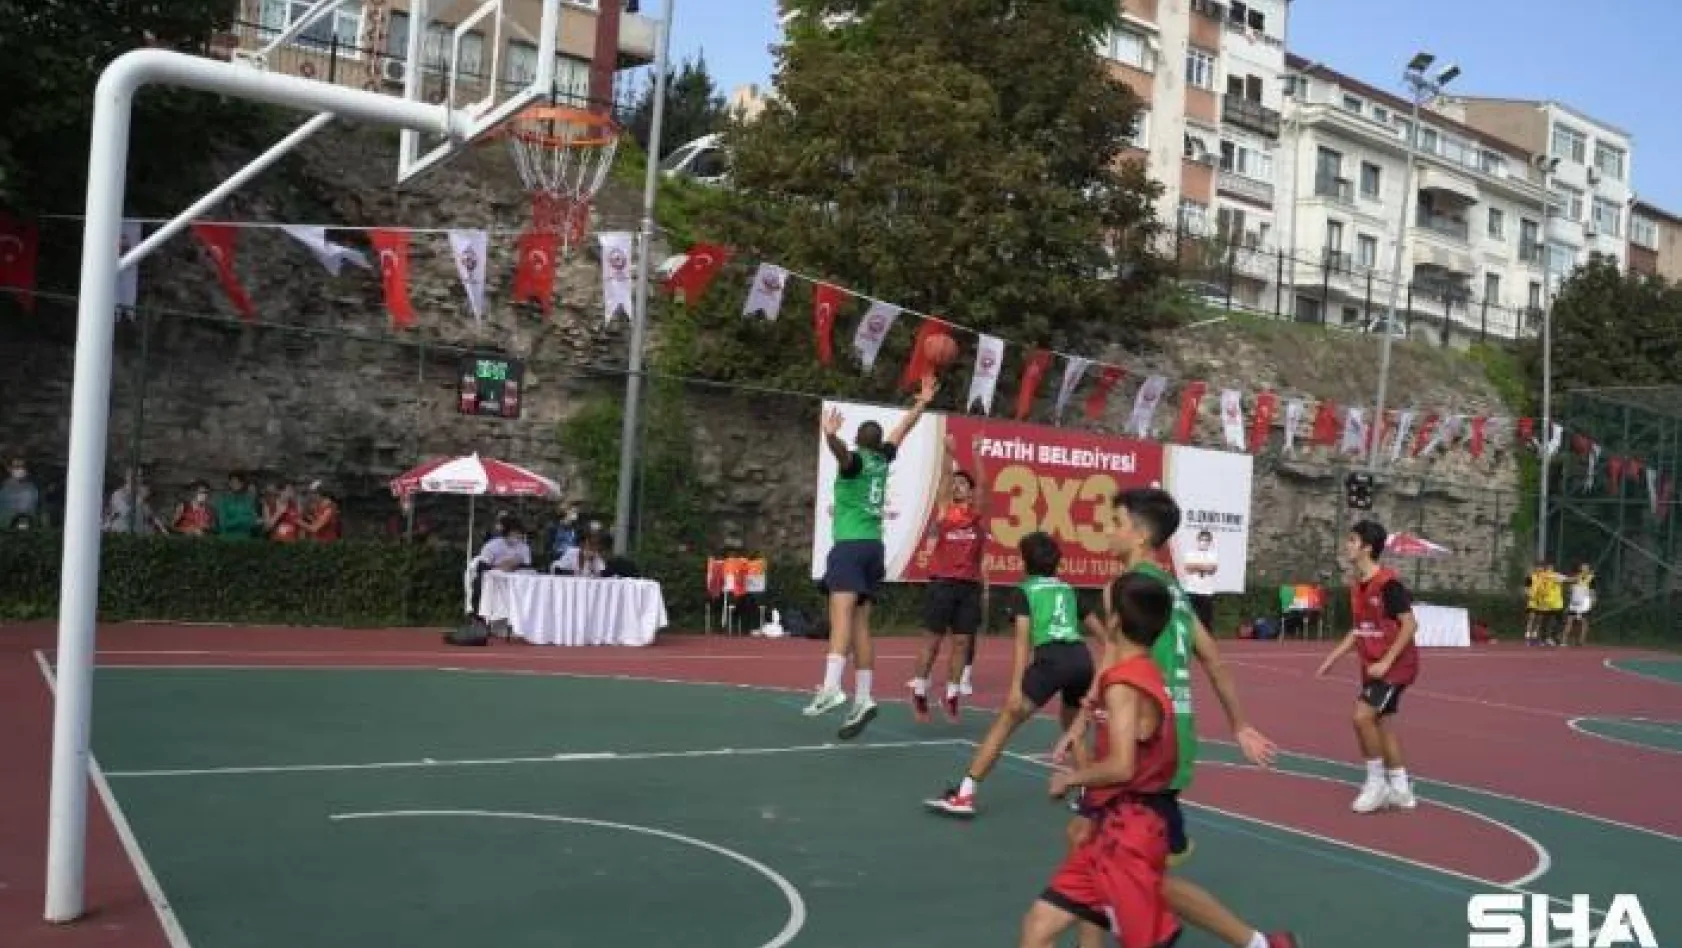 Fatih'te 7'inci sokak basketbol turnuvası başladı